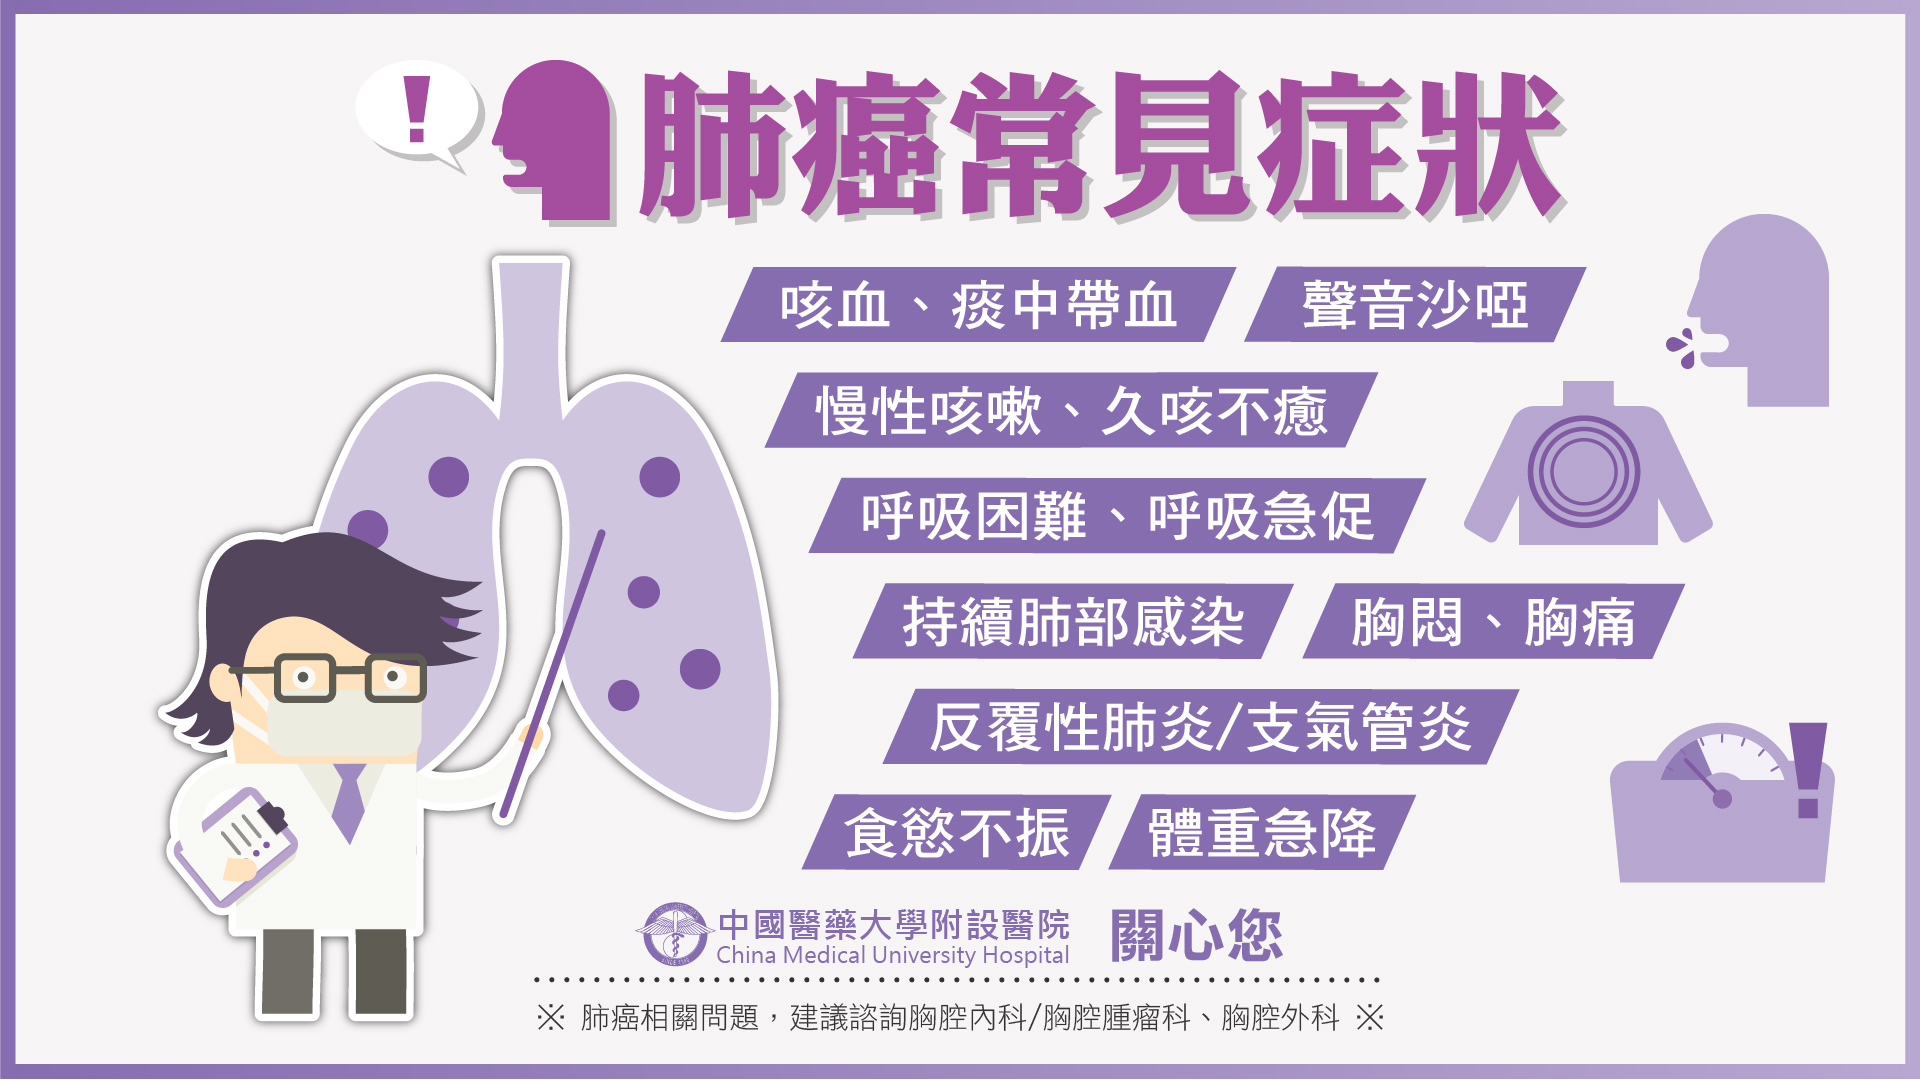 肺癌常見症狀 肺癌懶人包2 科室文章 中國醫藥大學附設醫院